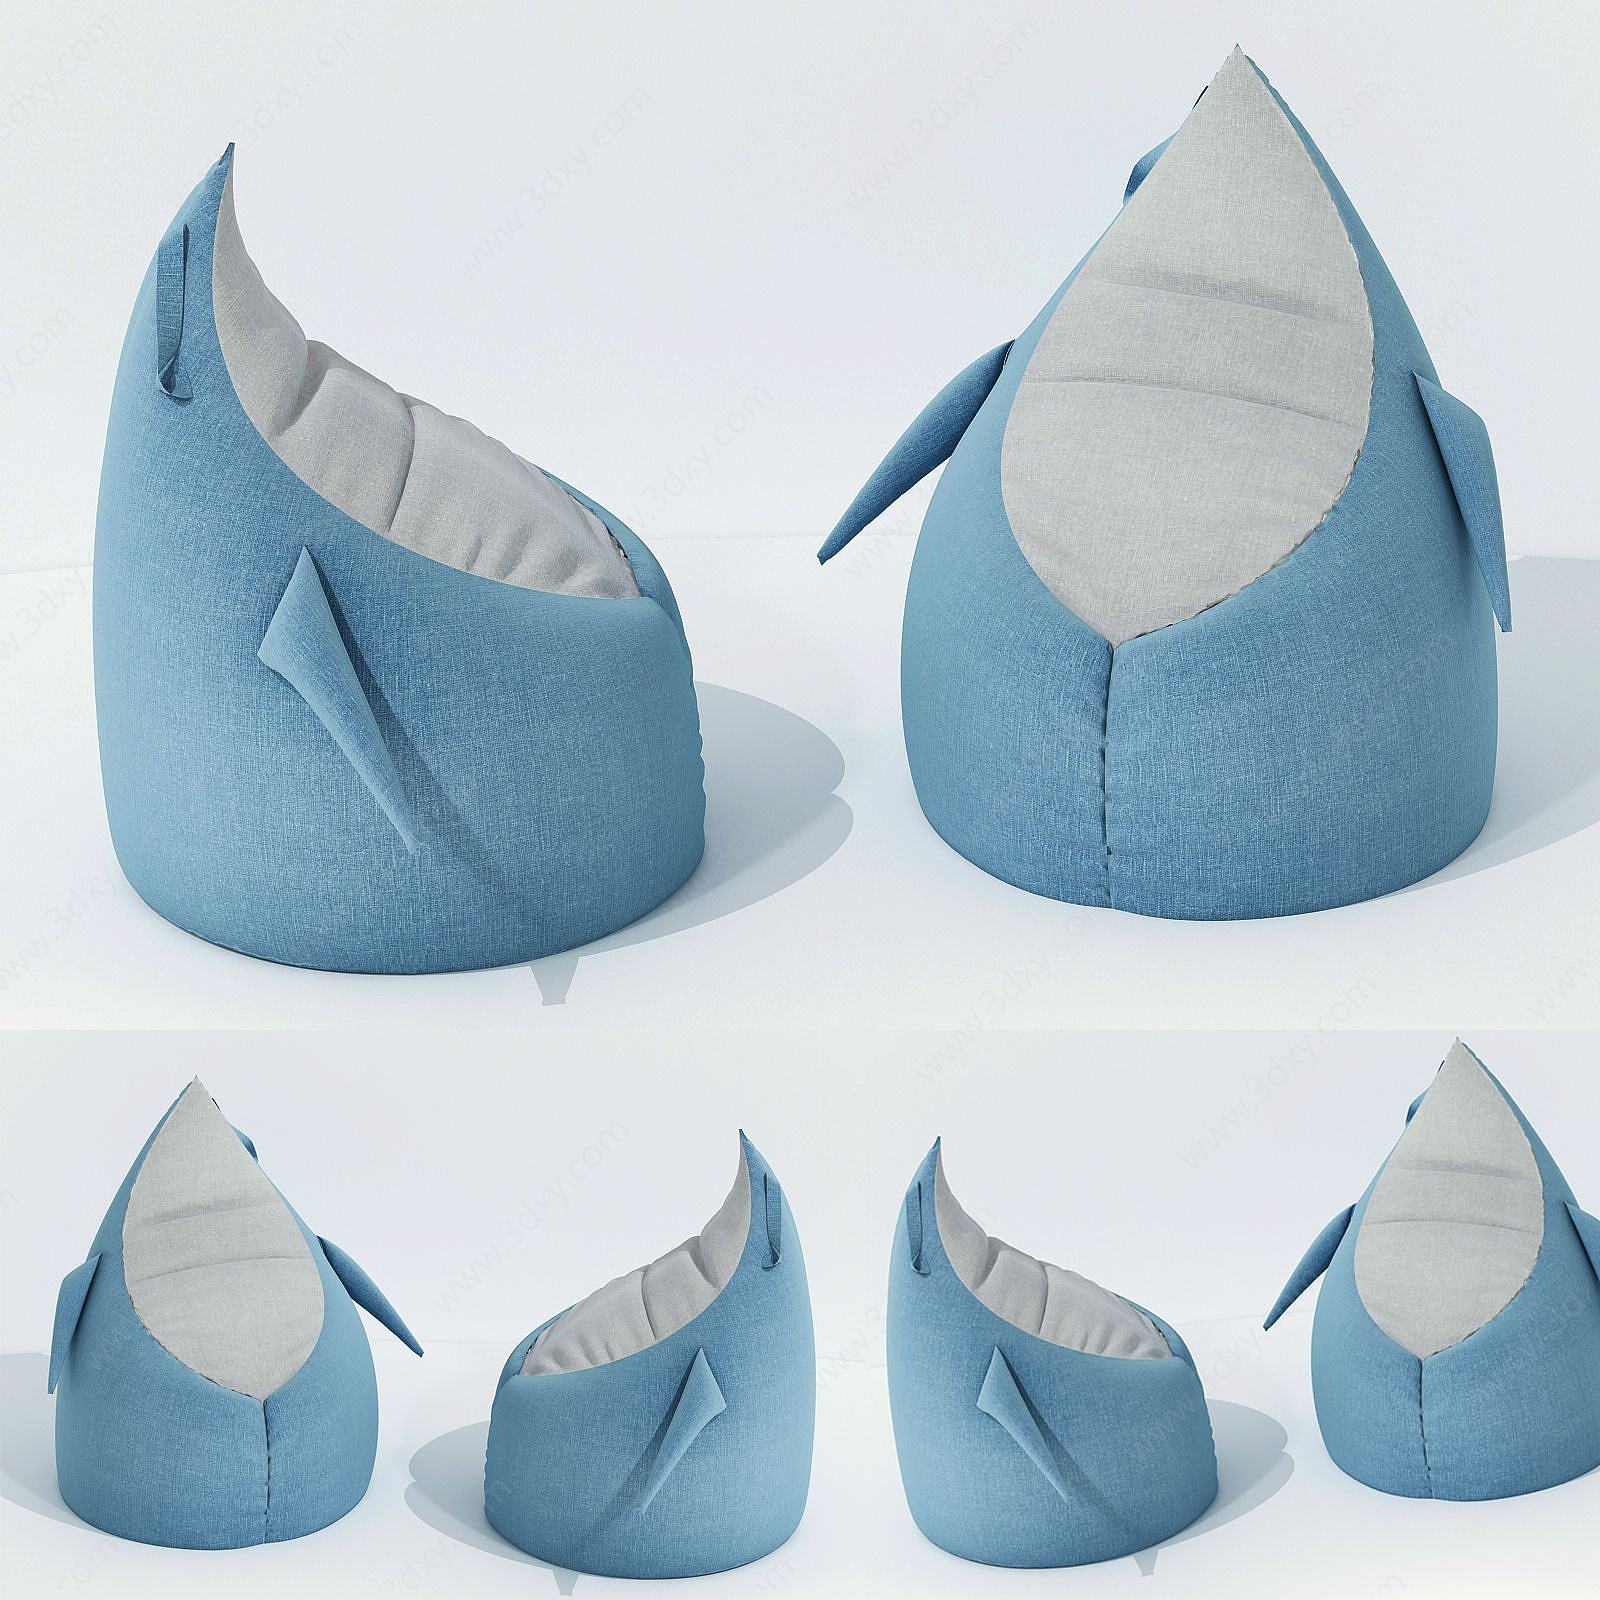 现代布艺休闲可爱企鹅椅子3D模型